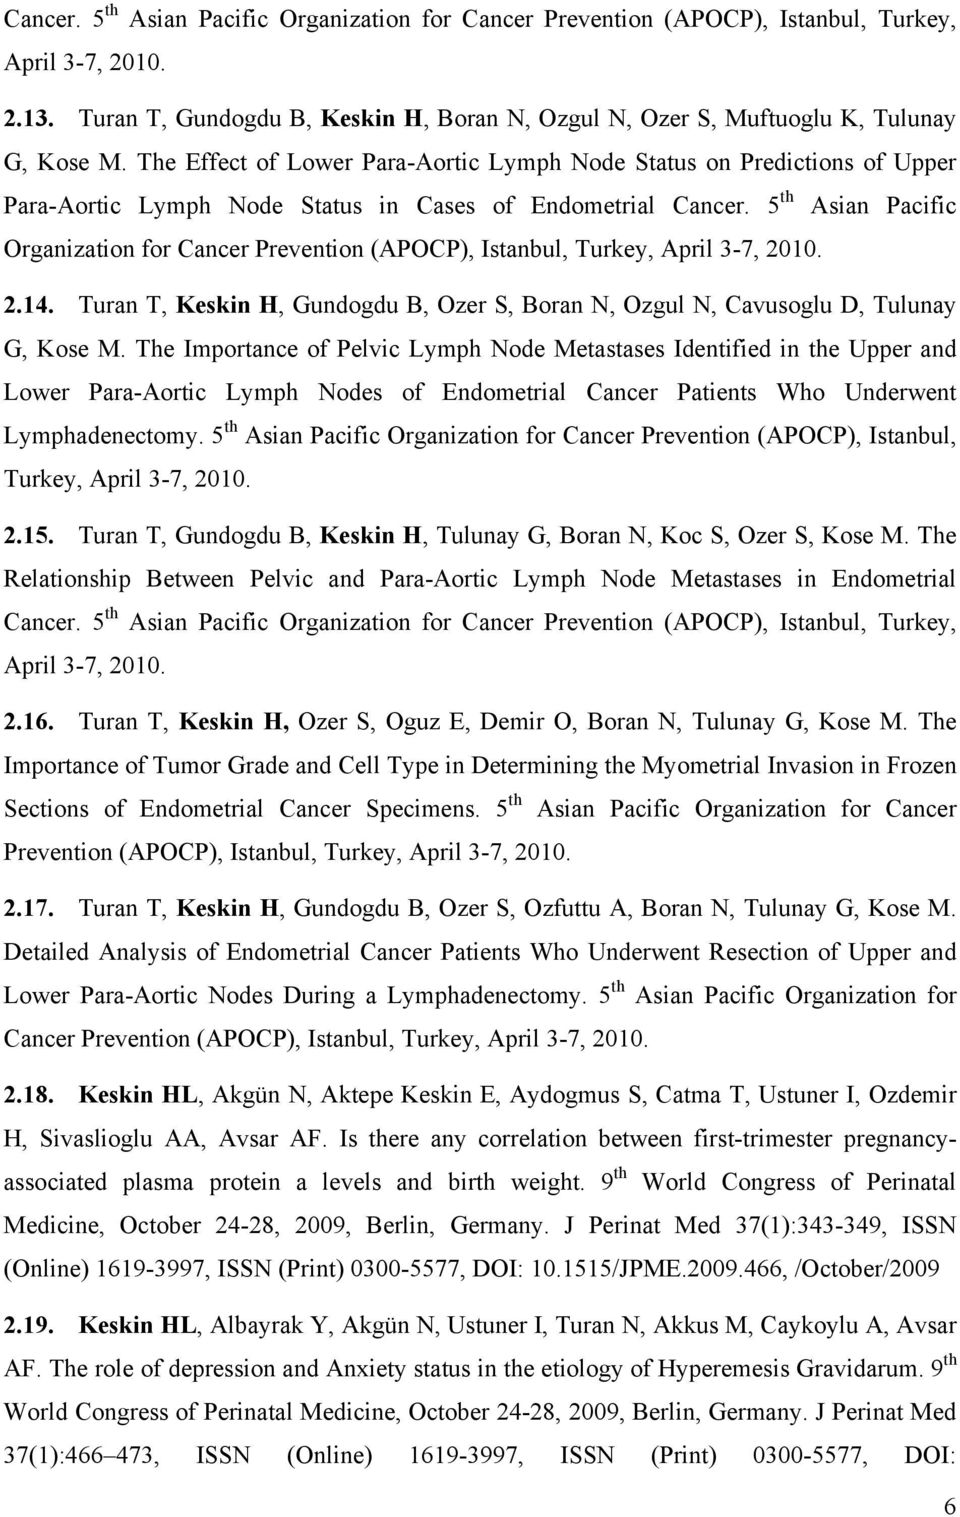 5 th Asian Pacific Organization for Cancer Prevention (APOCP), Istanbul, Turkey, April 3-7, 2010. 2.14. Turan T, Keskin H, Gundogdu B, Ozer S, Boran N, Ozgul N, Cavusoglu D, Tulunay G, Kose M.